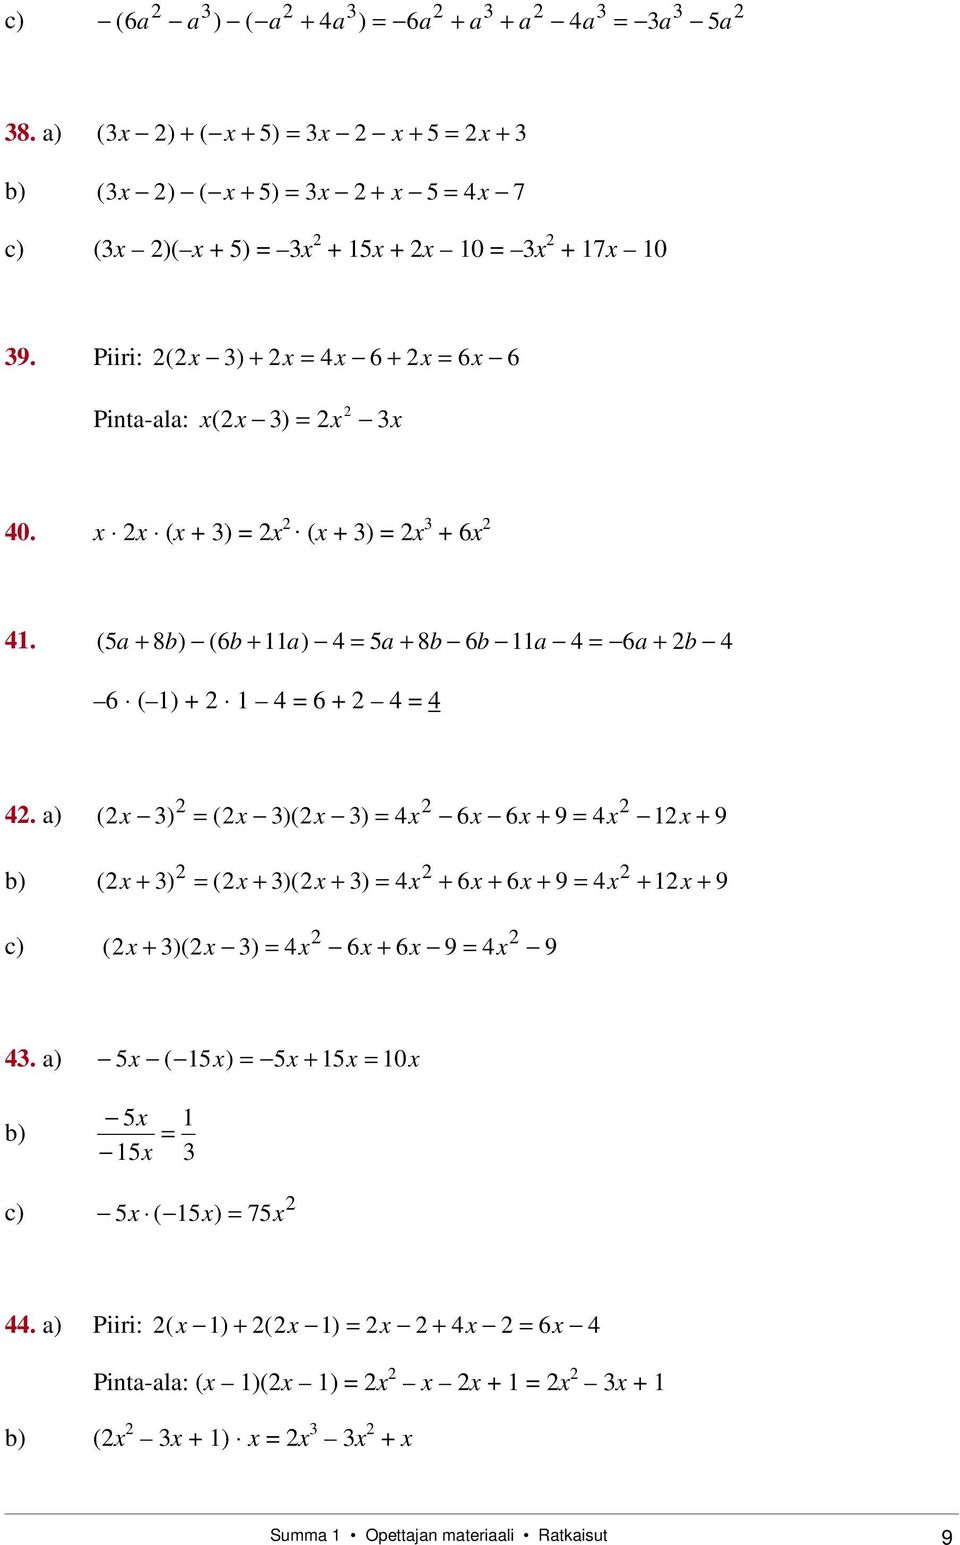 a) (x ) (x )(x ) x 6x 6x + 9 x 1x + 9 b) (x + ) (x + )(x + ) x + 6x + 6x + 9 x + 1x + 9 c) (x + )(x ) x 6x + 6x 9 x 9.